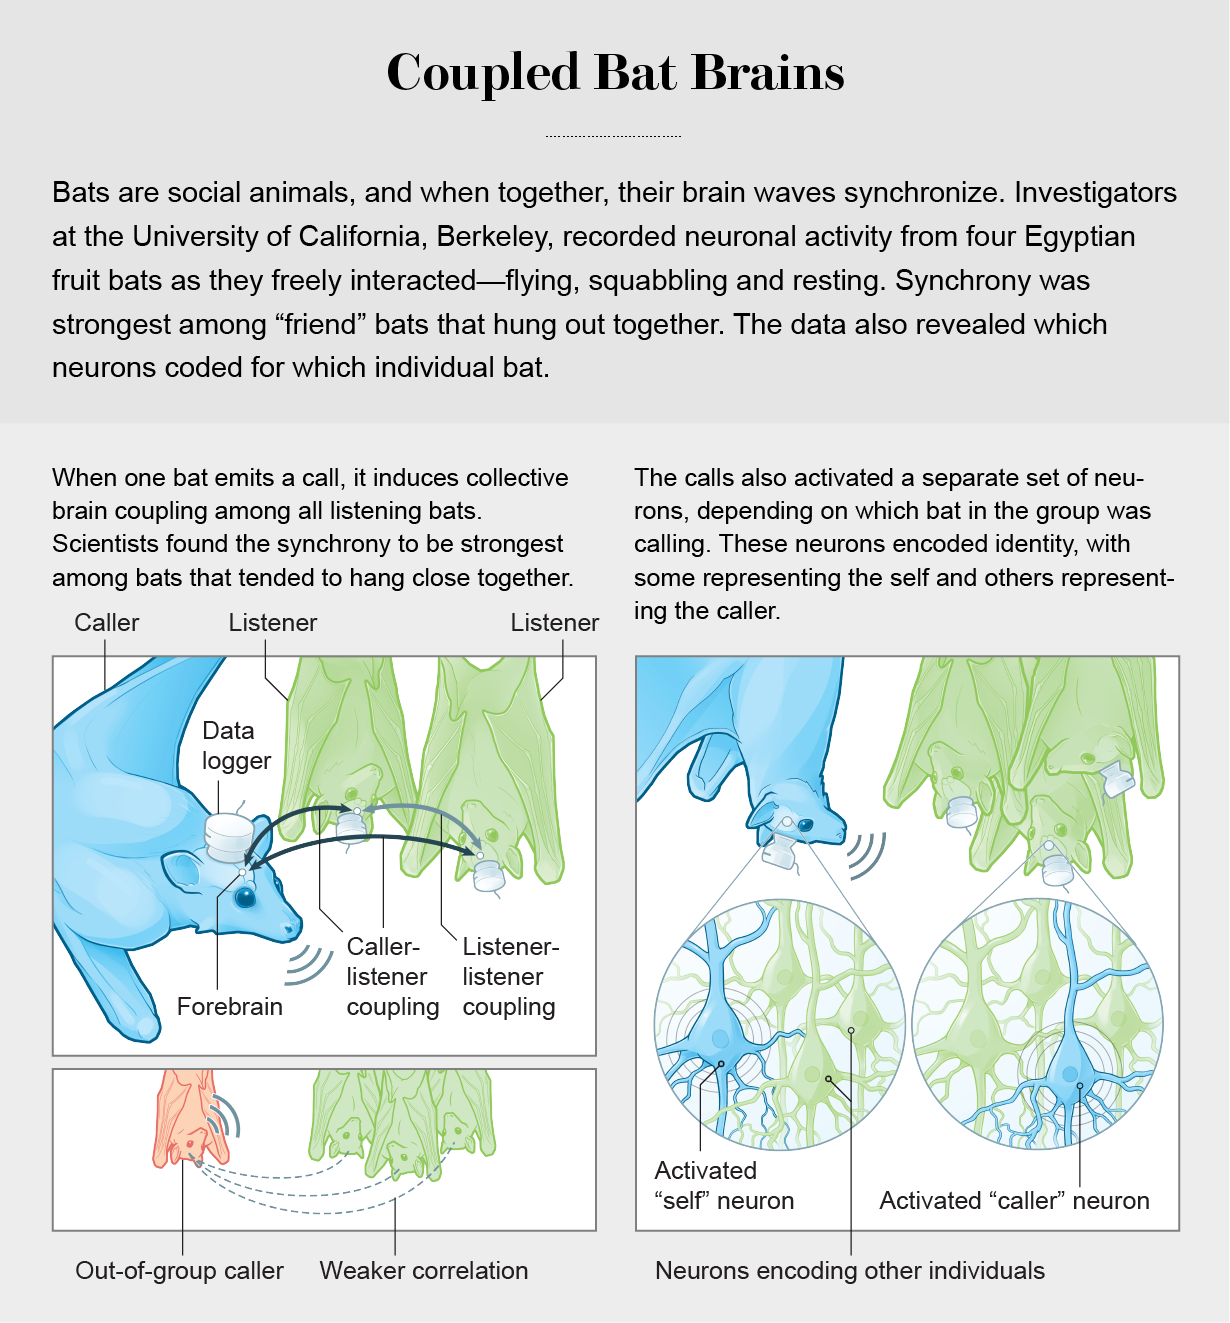 图表显示了研究人员如何追踪一群埃及果蝠的大脑同步性，并发现倾向于在一起闲逛的蝙蝠之间的同步性最强。